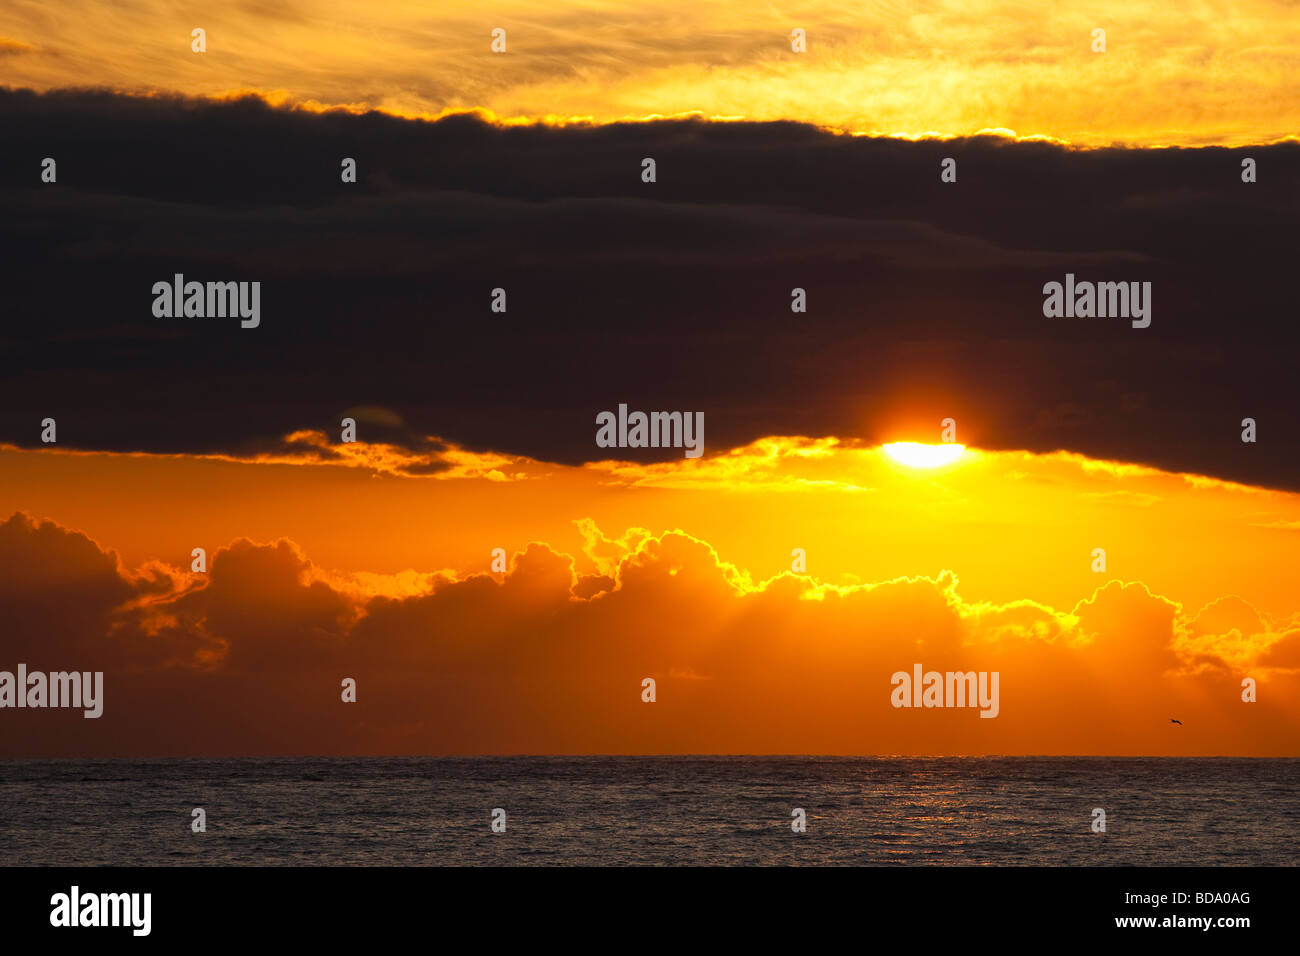 Sonnenuntergang Sonne hinter Wolken über Meer mit Seevogel im Sommer Cornwall England UK GB Vereinigtes Königreich Großbritannien britische Inseln Stockfoto